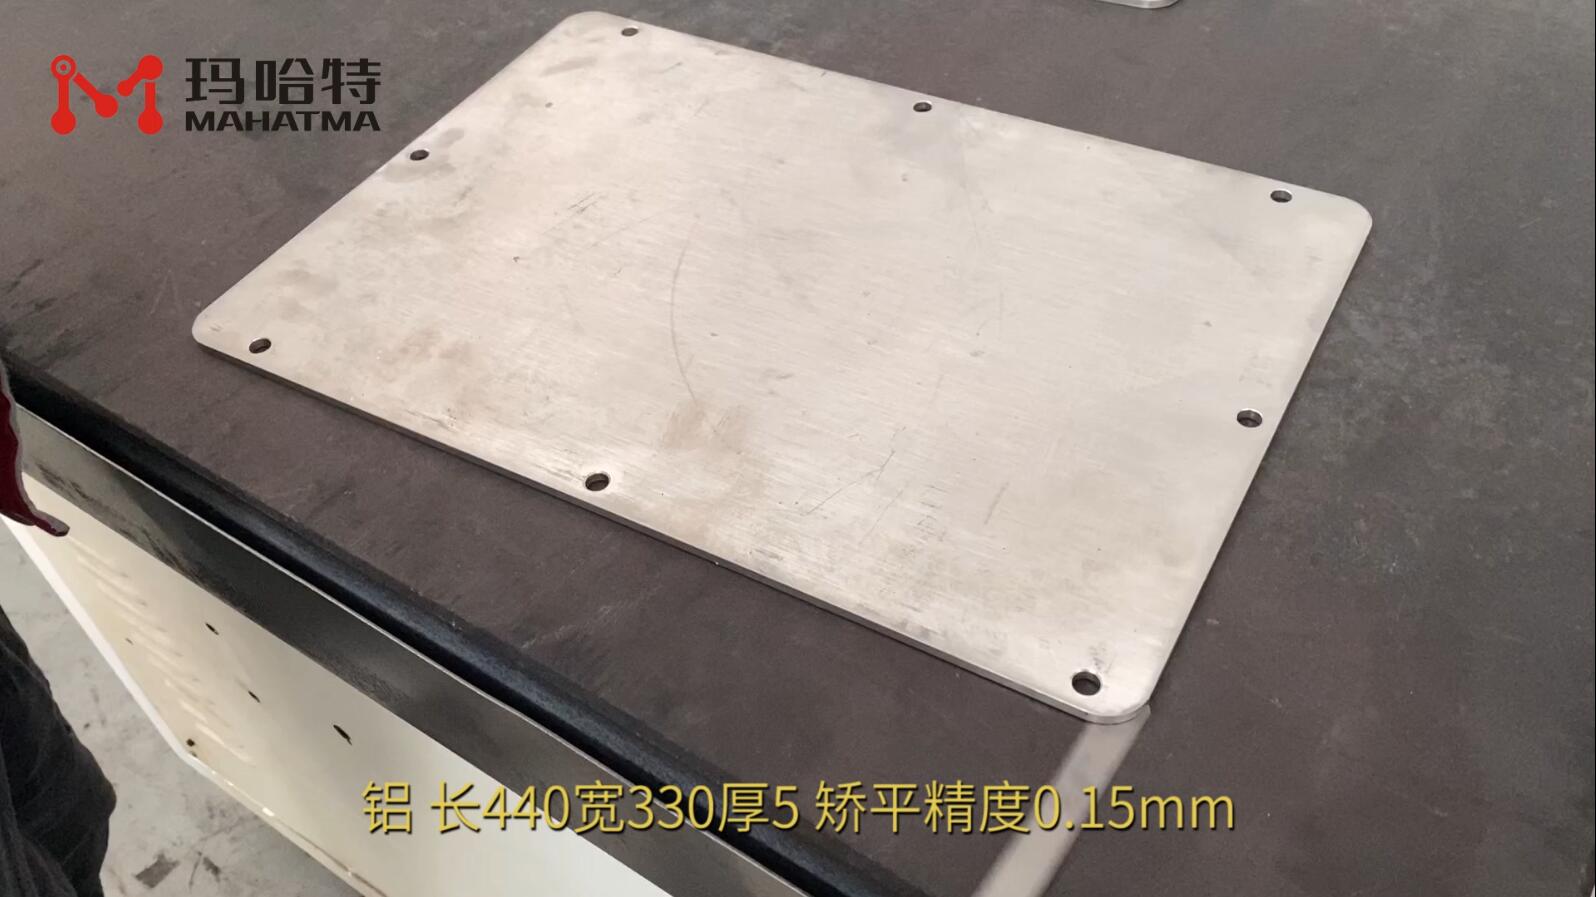 铝 MHT50-600 长方形 长440宽330厚5 矫平精度0.15mm